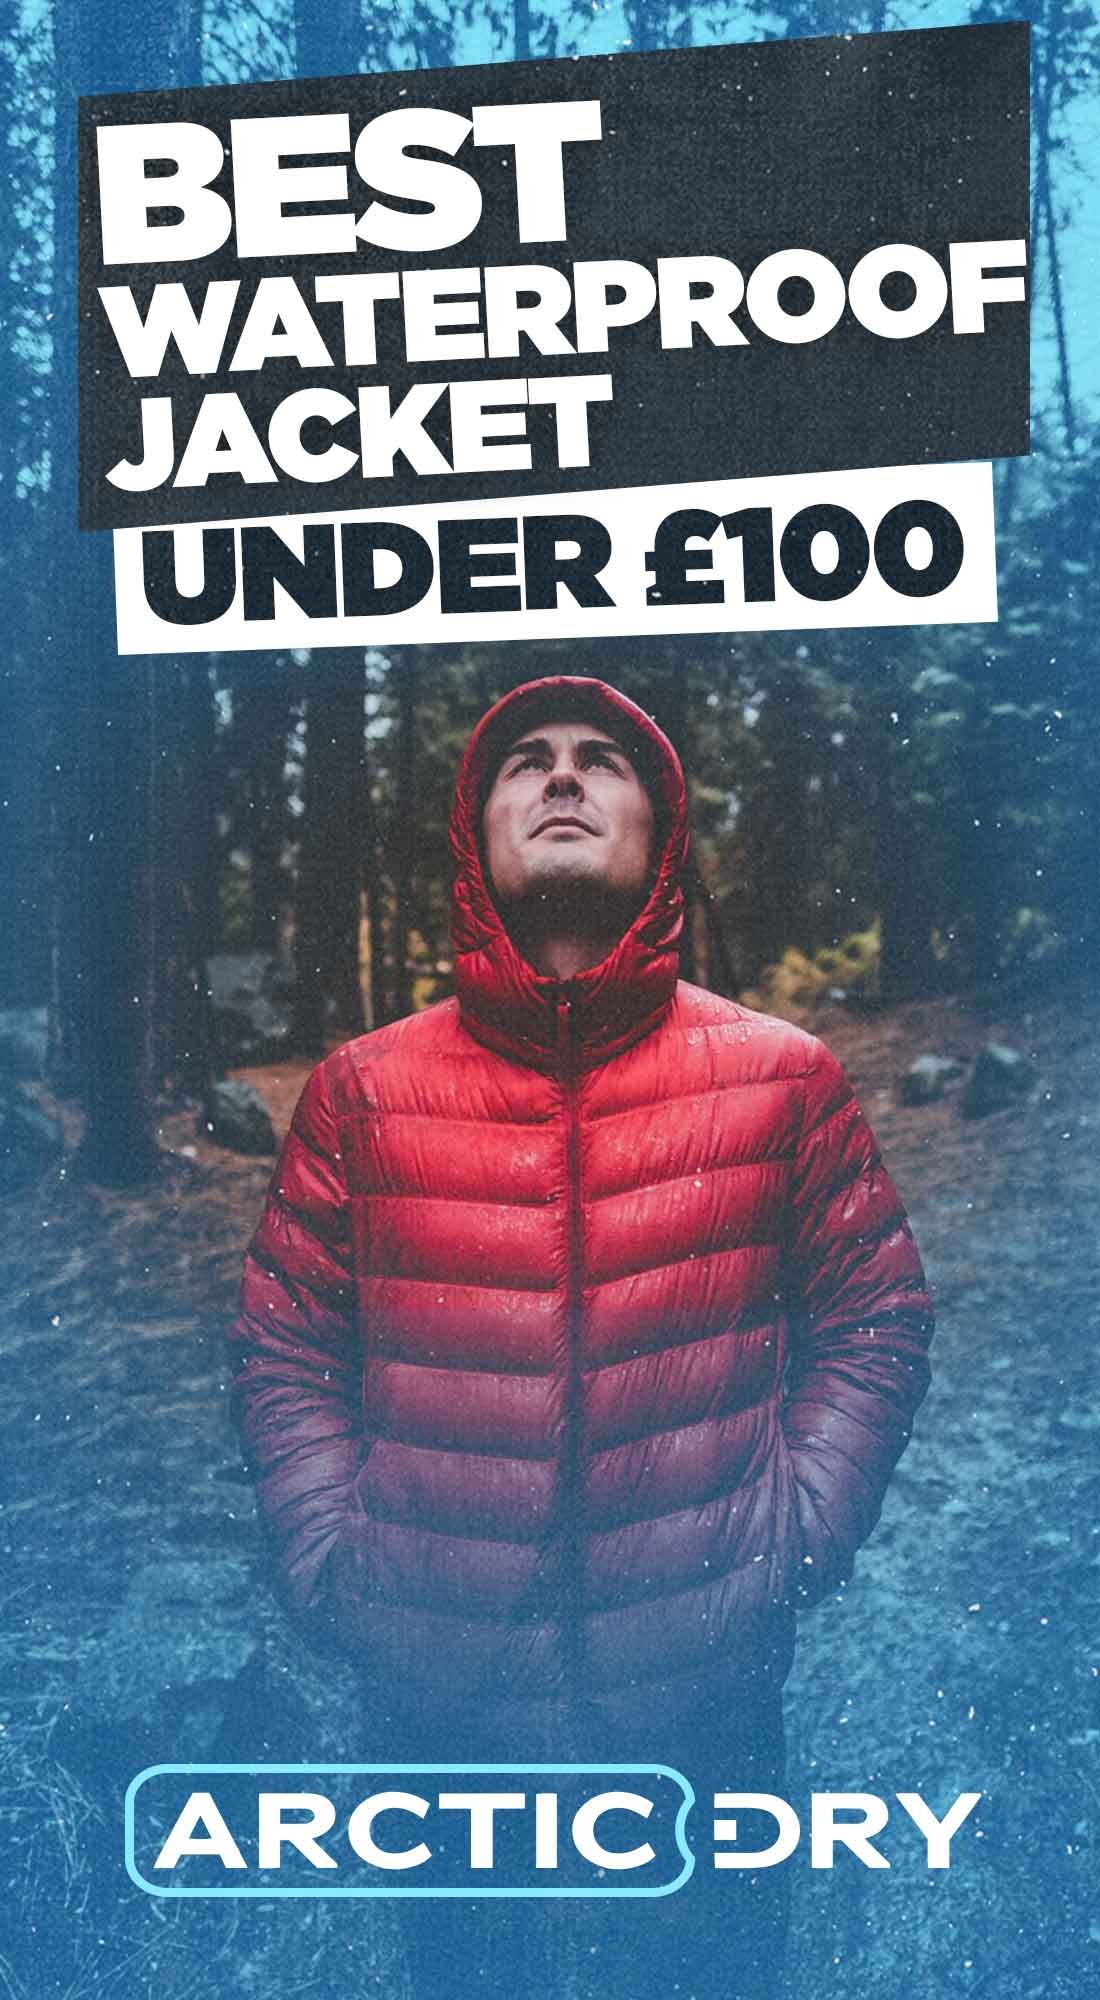 winter jackets under 100